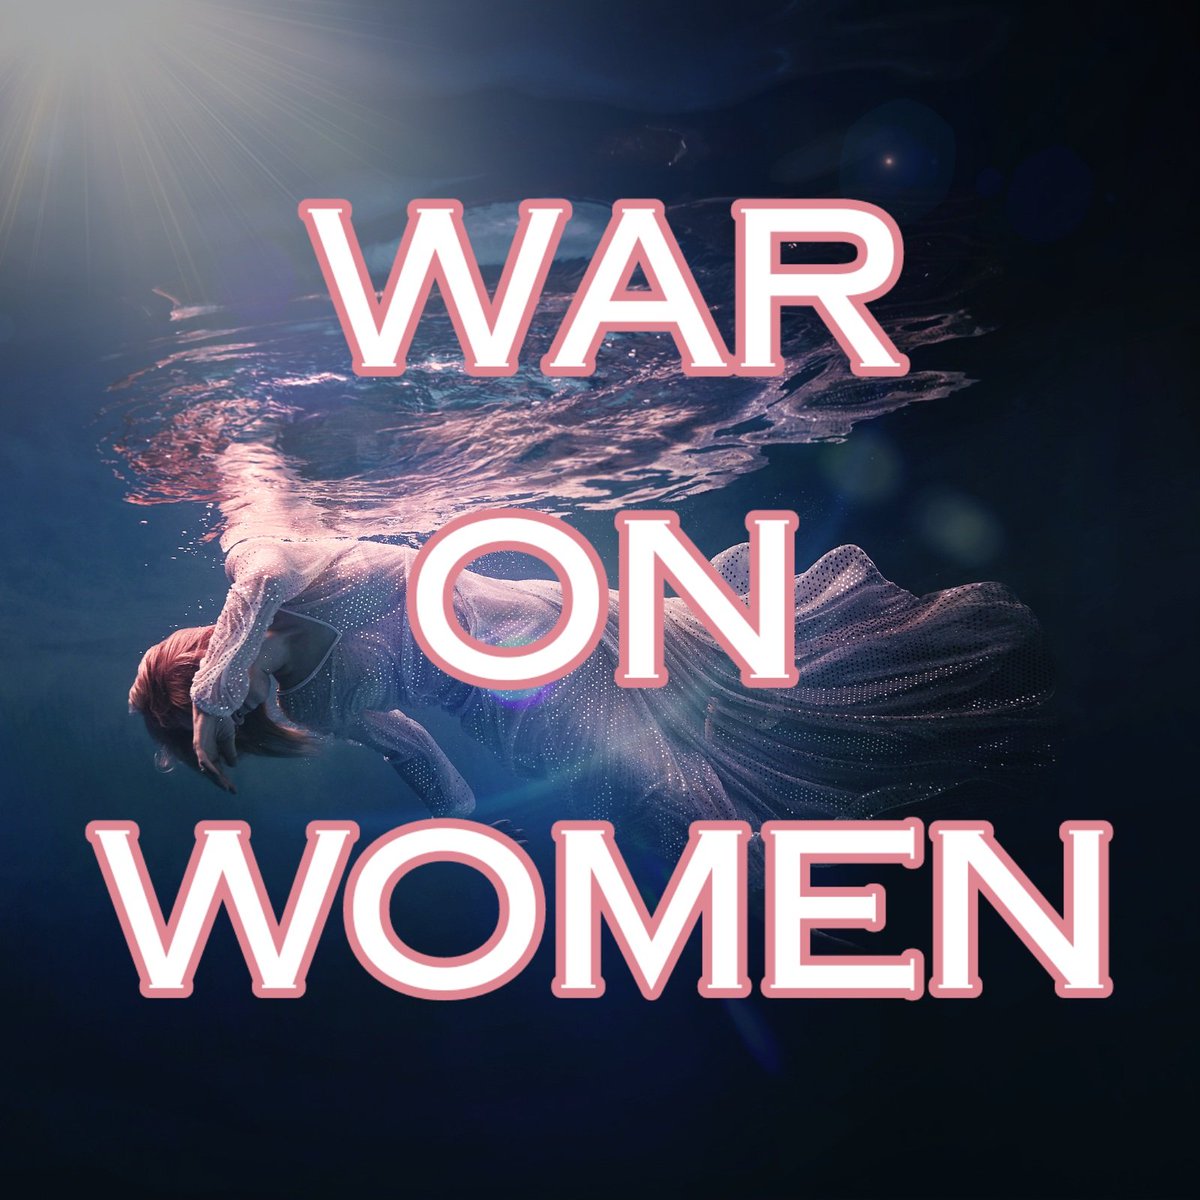 #WarOnWomen 
#TheResistance